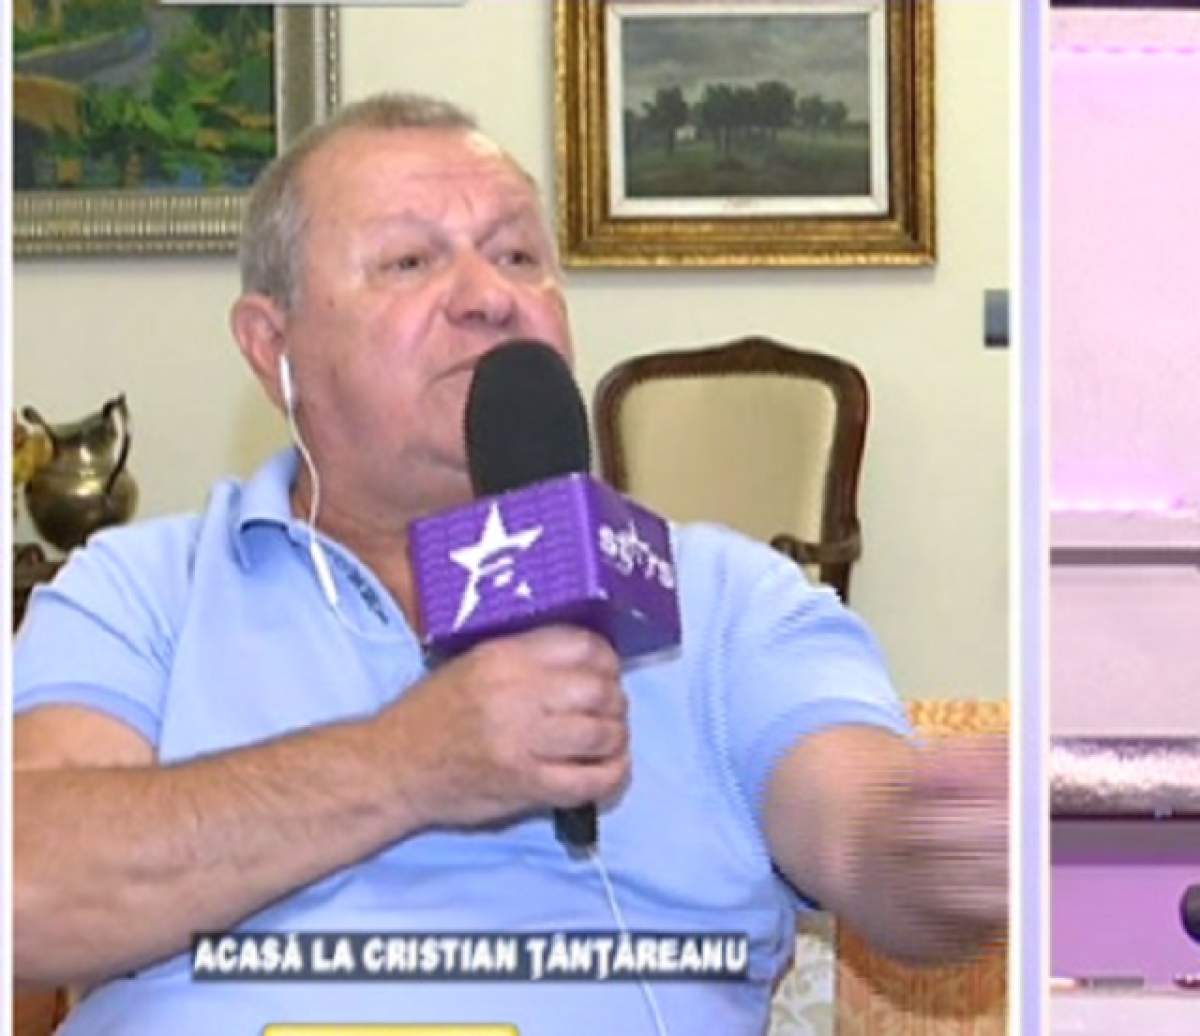 VIDEO / Reacţia lui Cristian Ţânţăreanu după ce a fost acuzat că şi-a făcut stradă personală. Milionarul tună şi fulgeră!